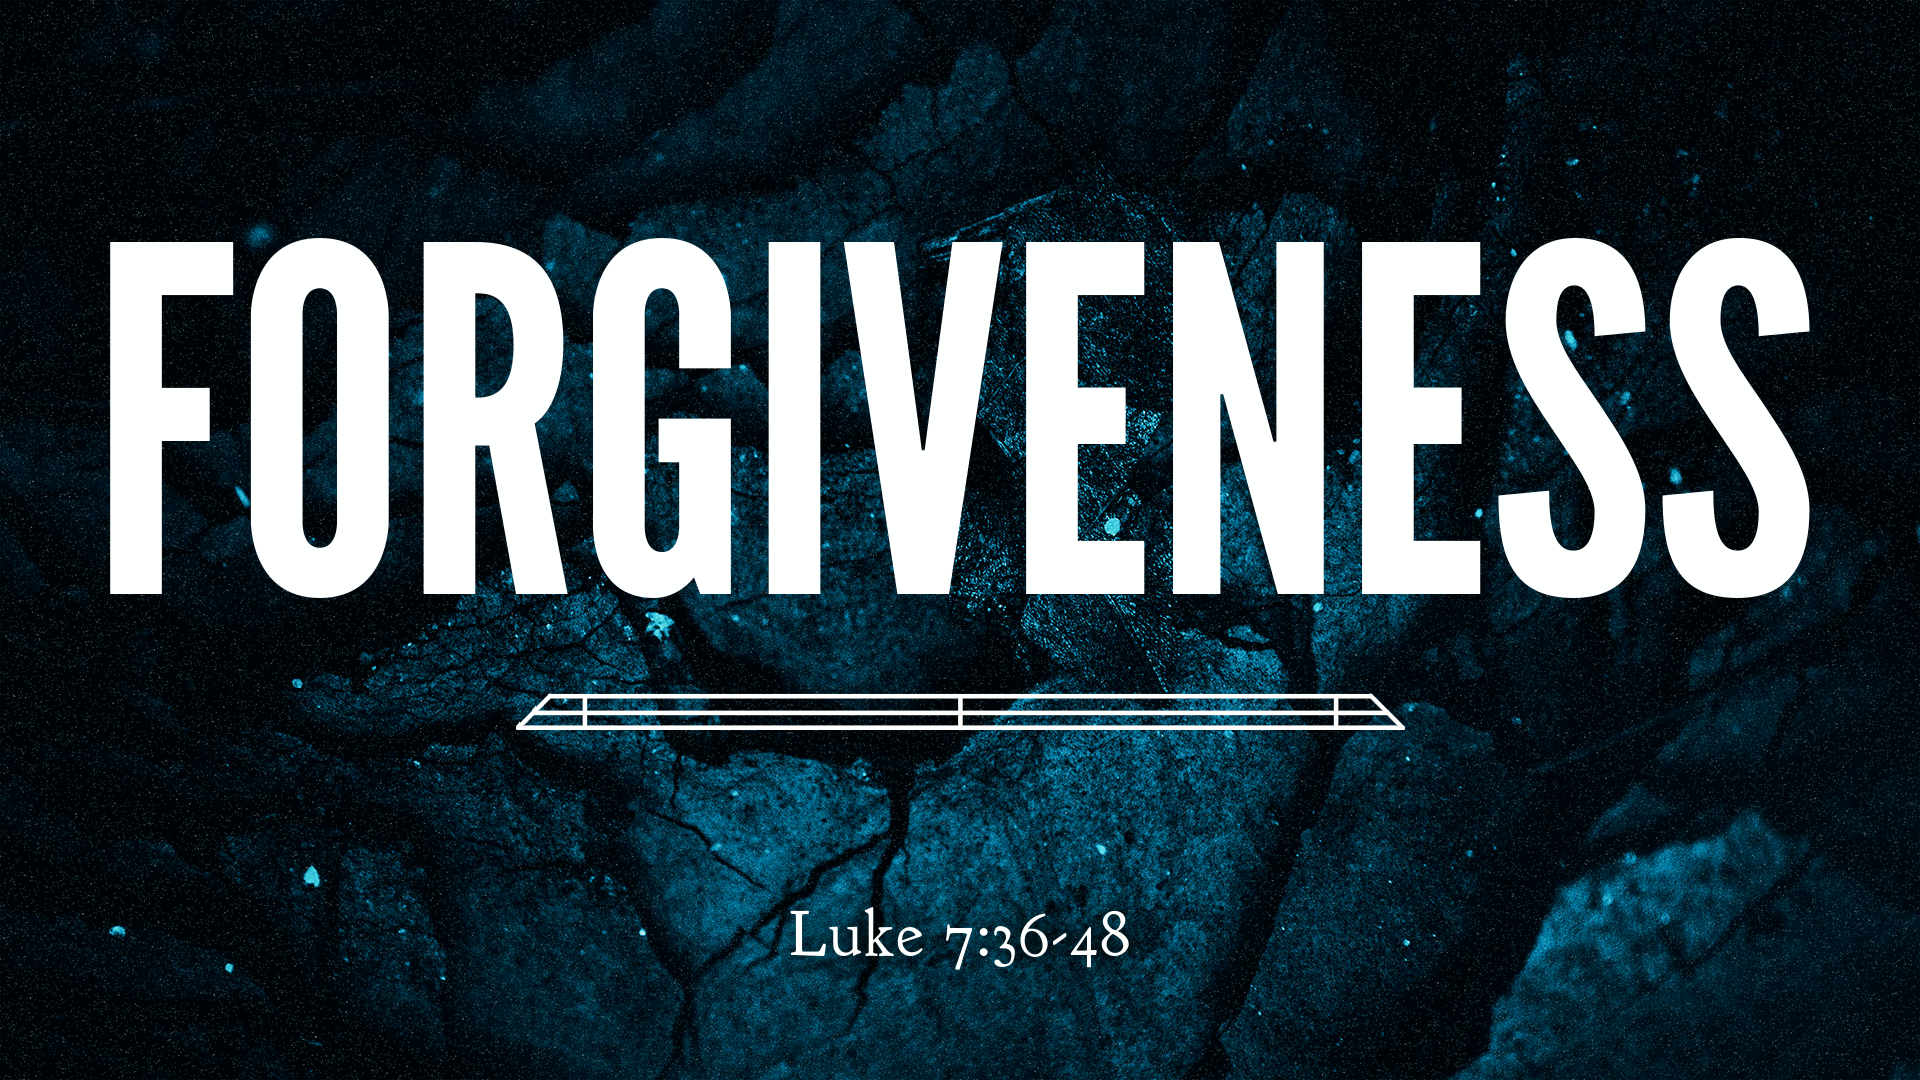 Oct 25, 2020 - Forgiveness (Video) - Luke 7:36-48